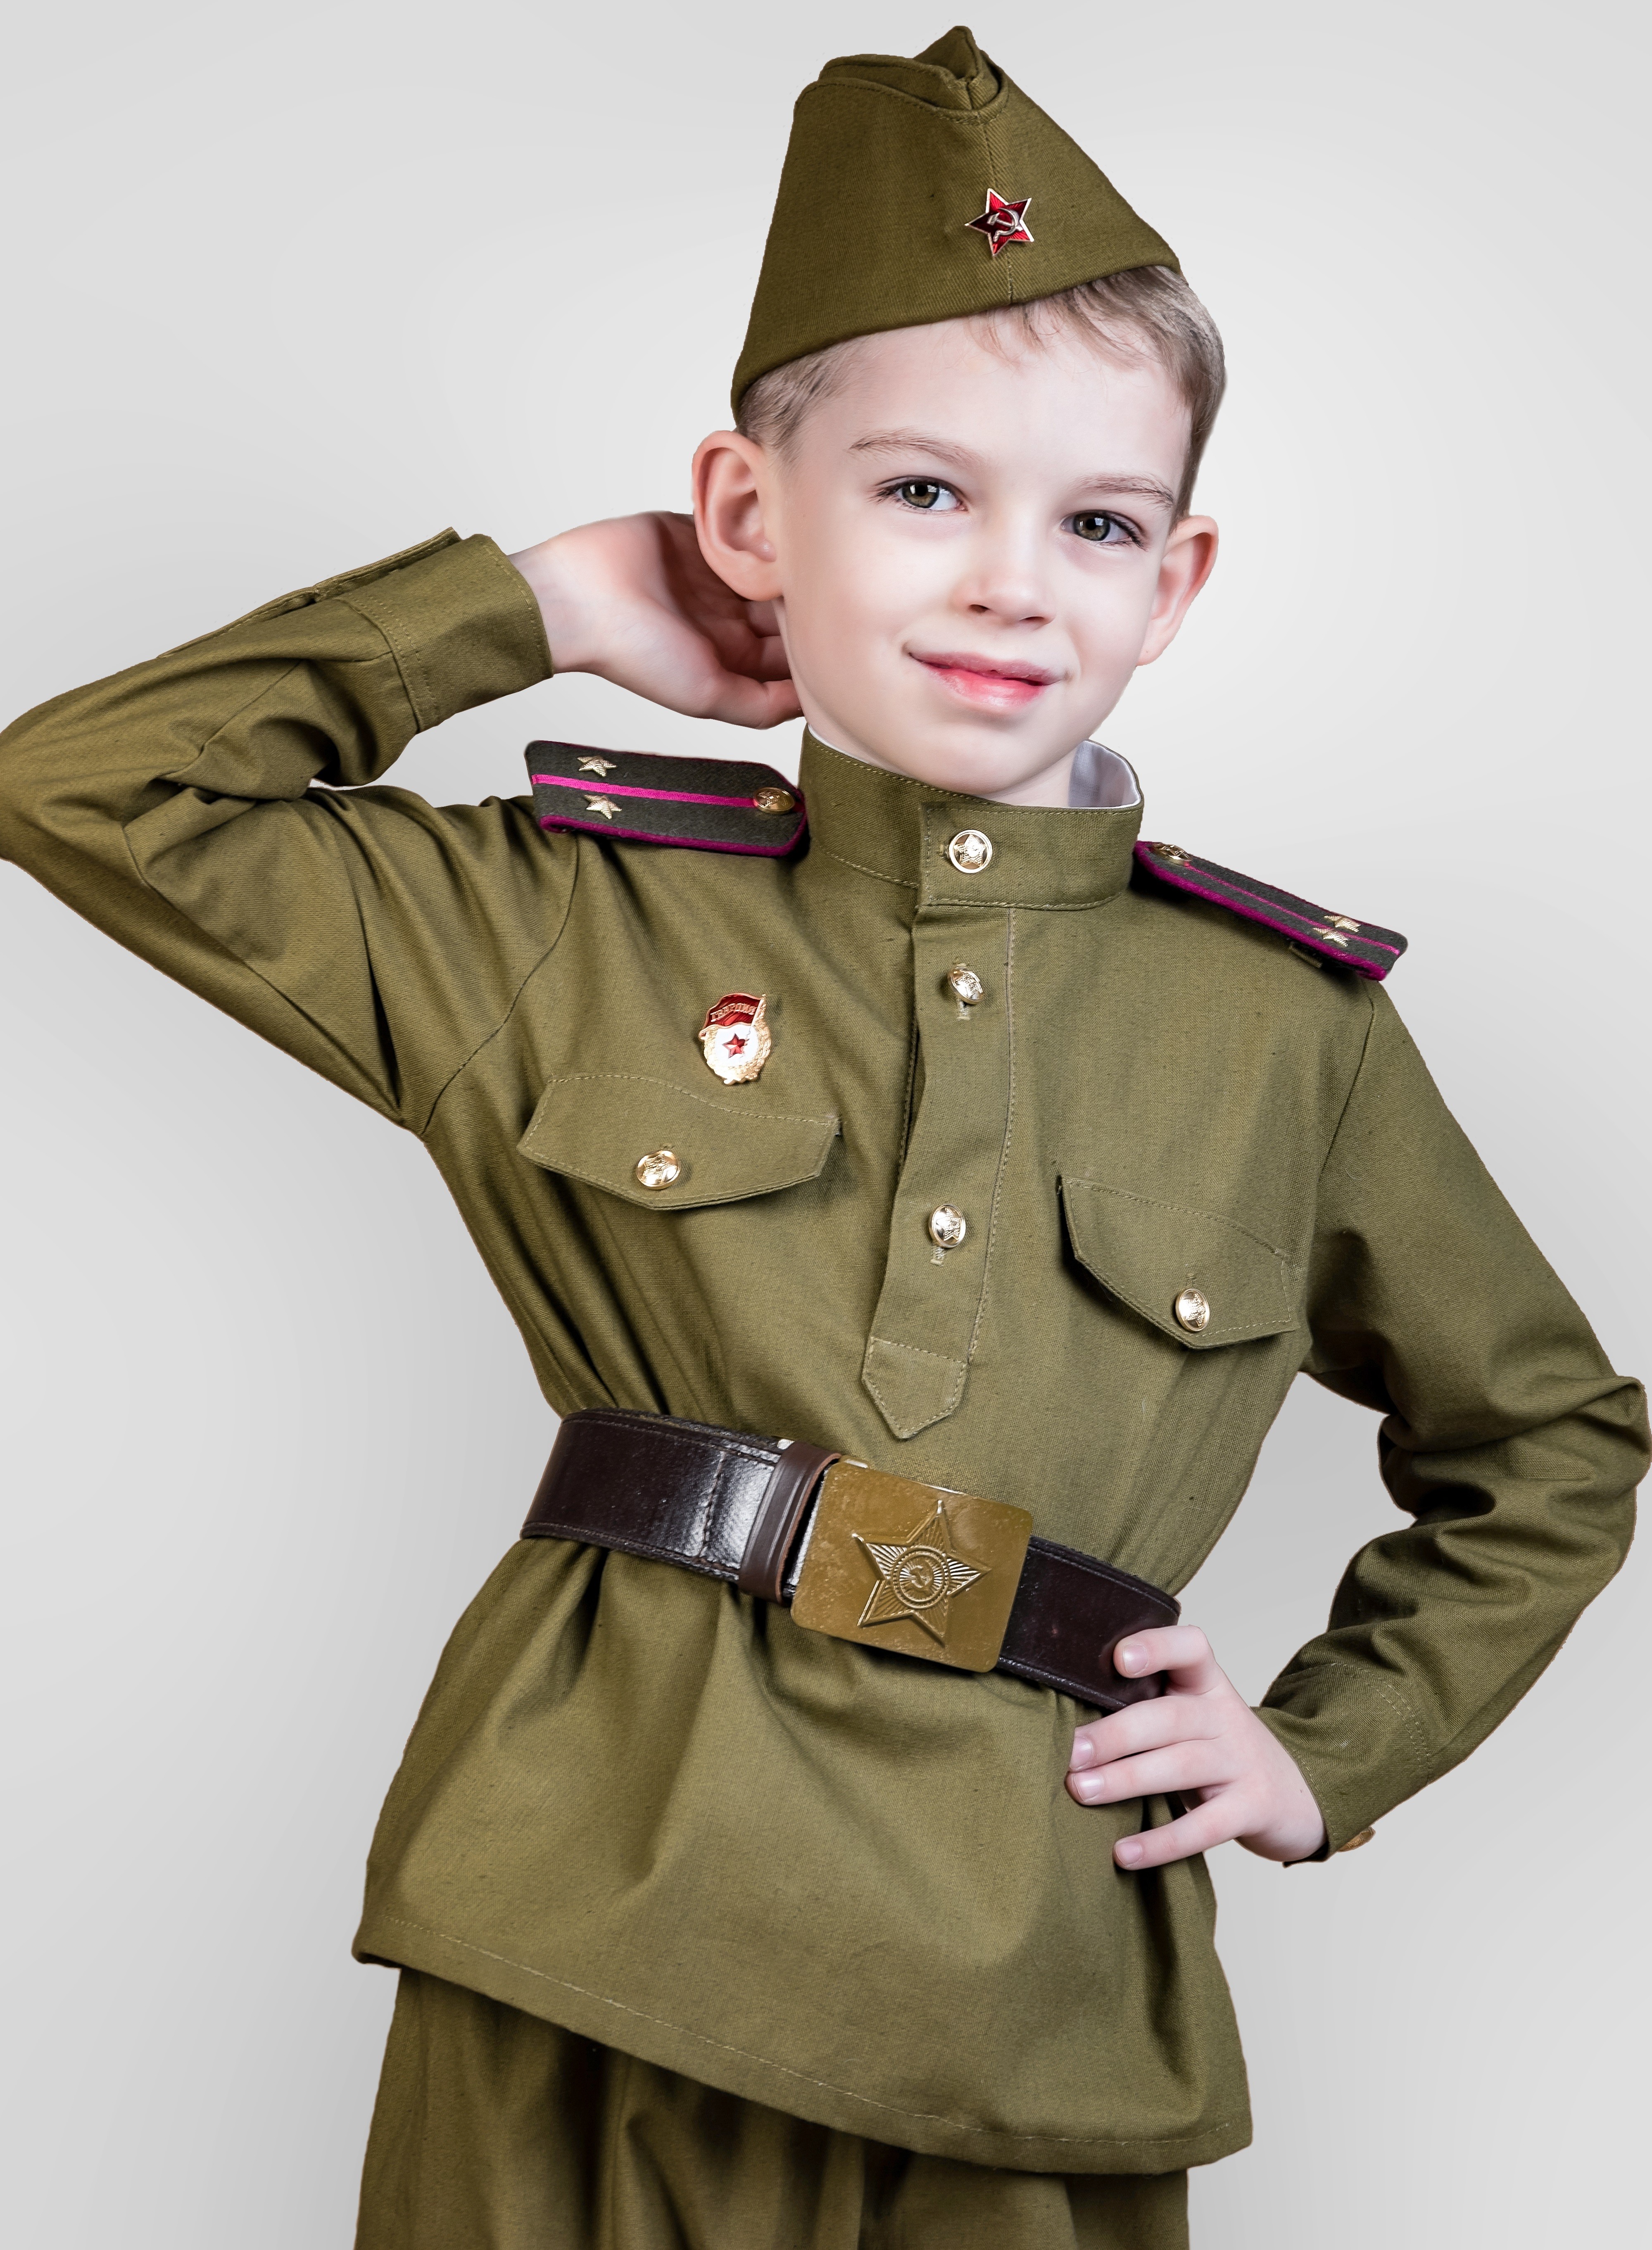 Купить военную форму на 9 мая. Дети в военной форме. Детская Военная форма. Солдатская форма для детей. Военнаяыорма для ребенка.